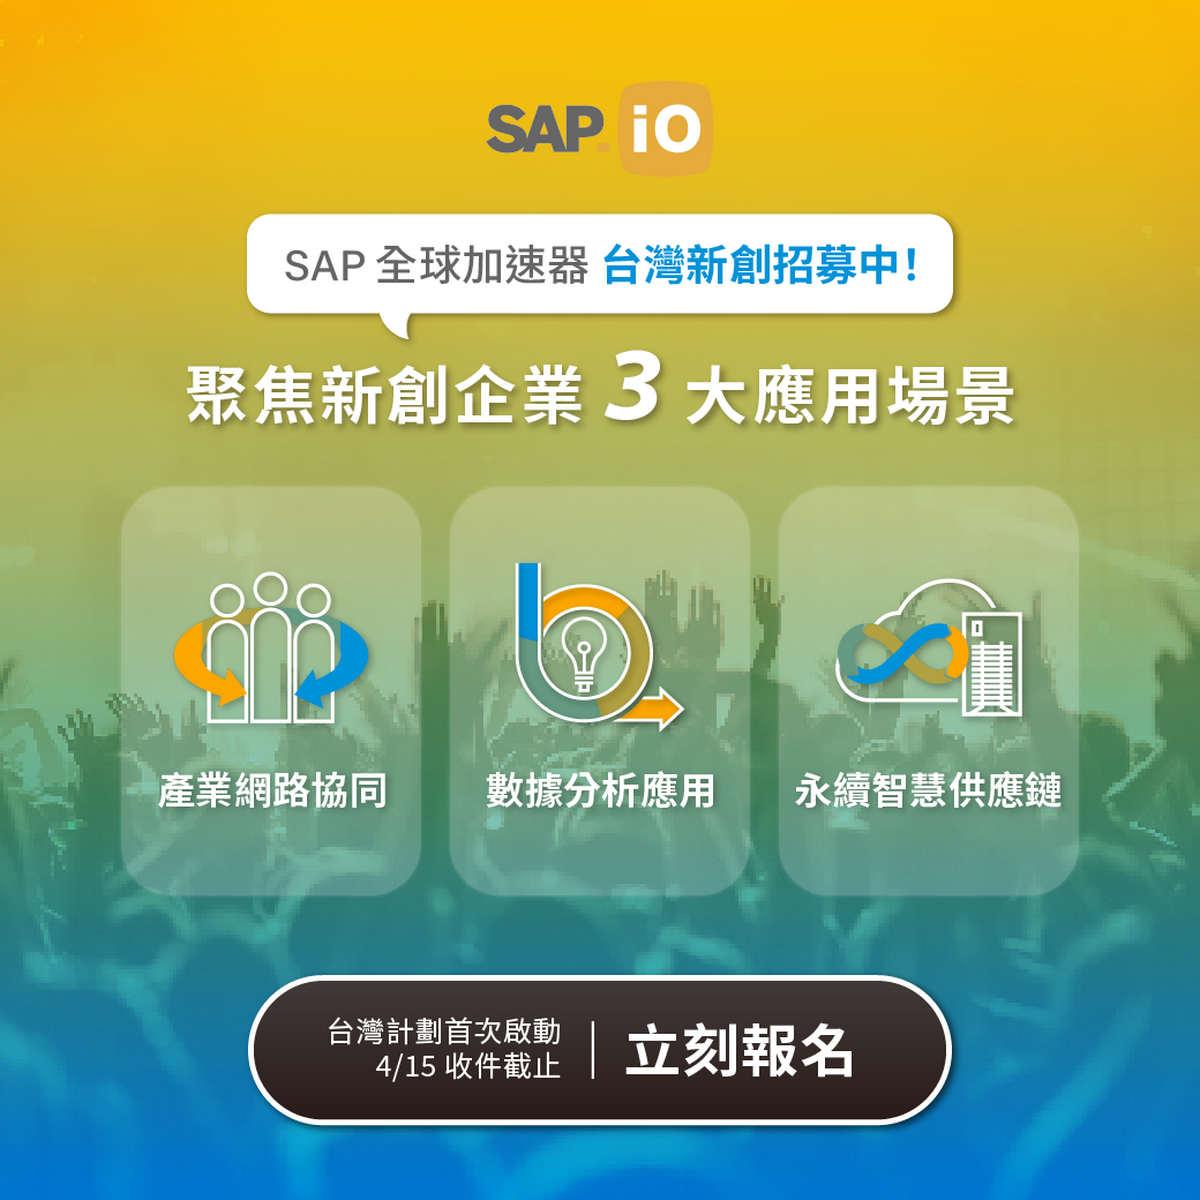 首次登陸台灣的 SAP.iO 加速器計劃聚焦「產業網路協同」、「數據分析